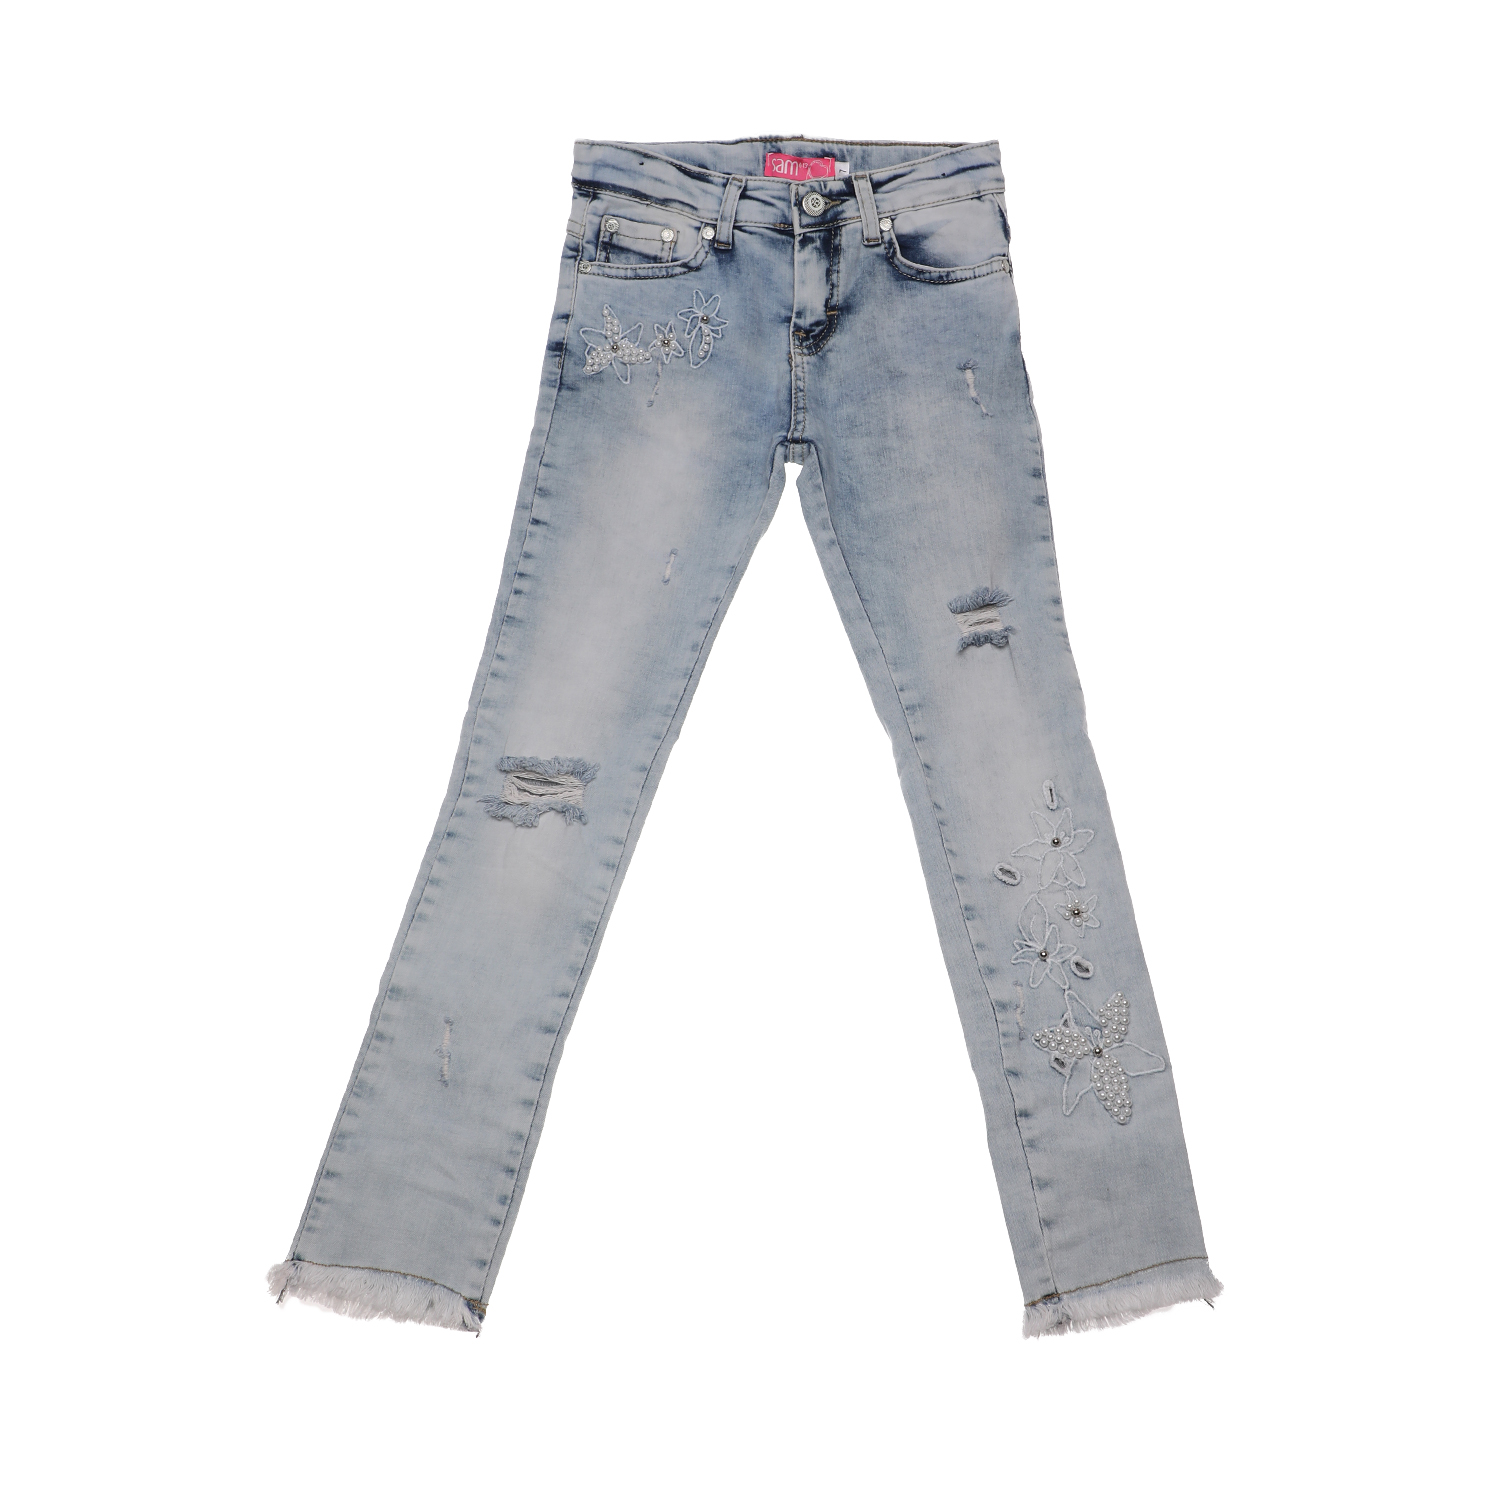 Παιδικά/Girls/Ρούχα/Παντελόνια SAM 0-13 - Παιδικό jean παντελόνι SAM 0-13 μπλε